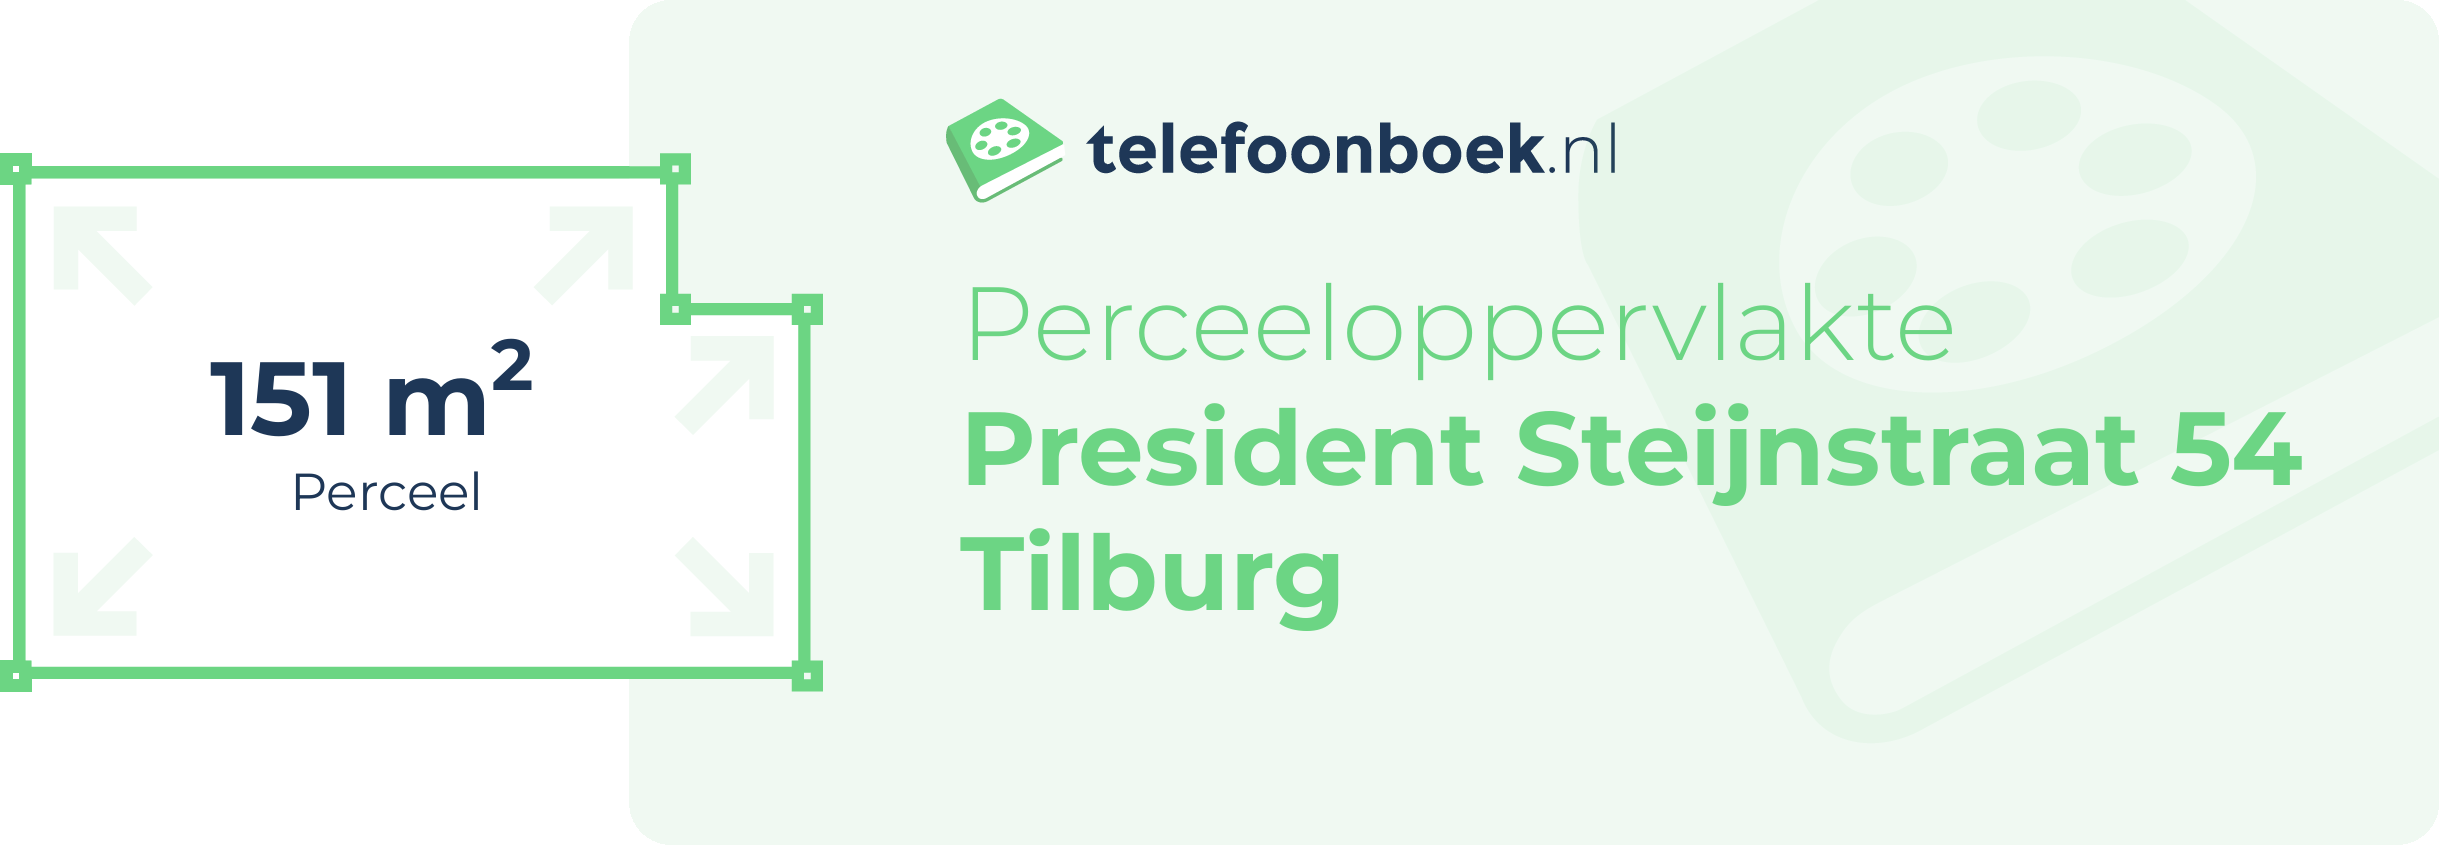 Perceeloppervlakte President Steijnstraat 54 Tilburg